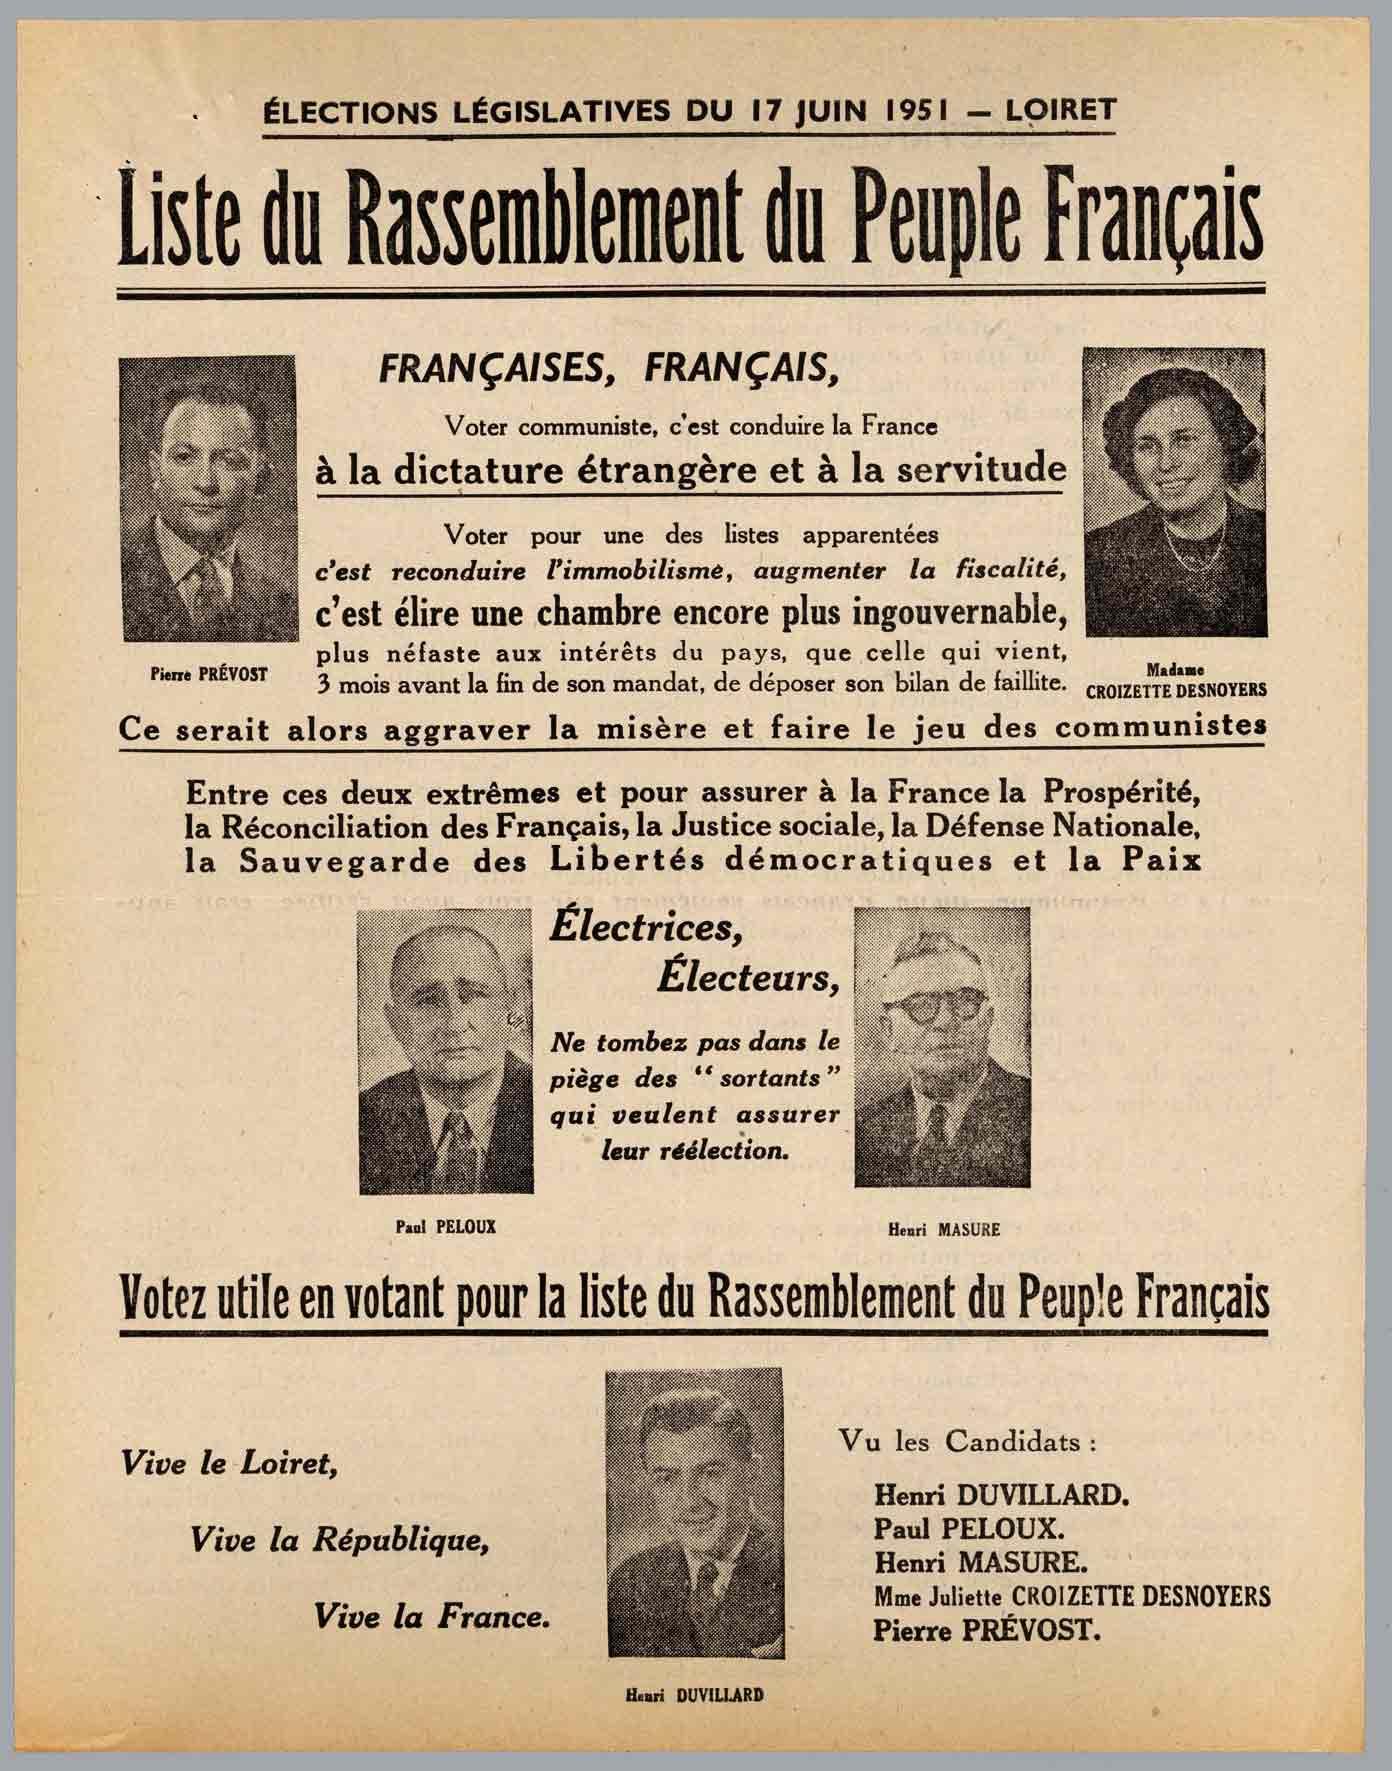 Profession de foi du parti du Rassemblement du Peuple Français en juin 1951